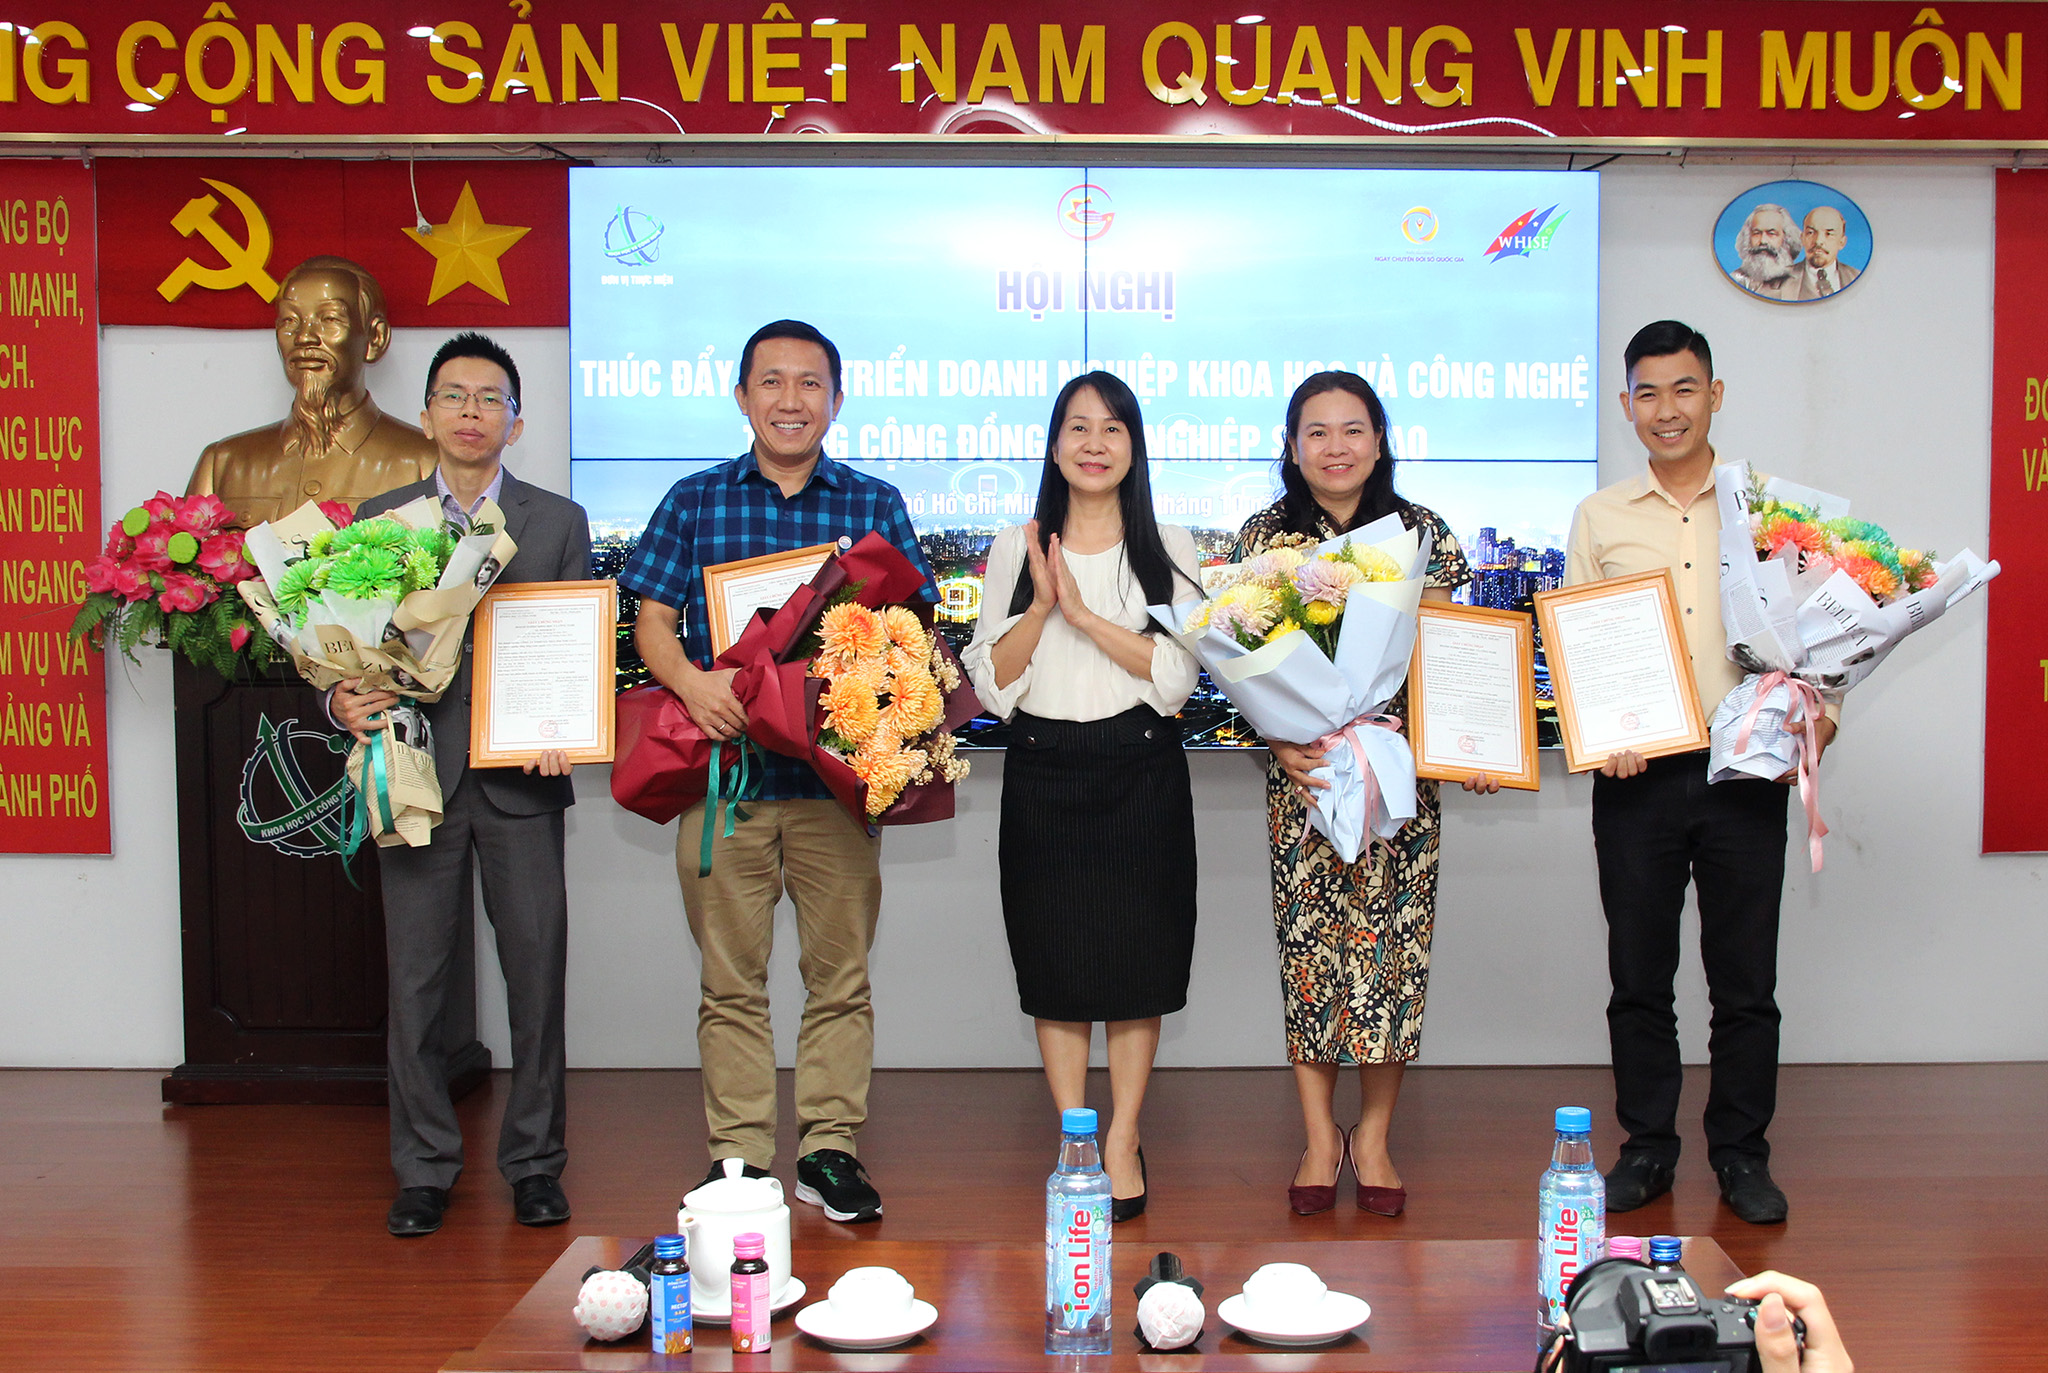 Ban Tổ chức đã trao giấy chứng nhận doanh nghiệp KHCN cho các đơn vị: Công ty TNHH Gia Thái Doctor Loan, Công ty CP Bê tông đường thủy, Công ty TNHH LaVite, Công ty Cổ phần Khoa học Kỹ thuật Phượng Hải (Ảnh: H.H)